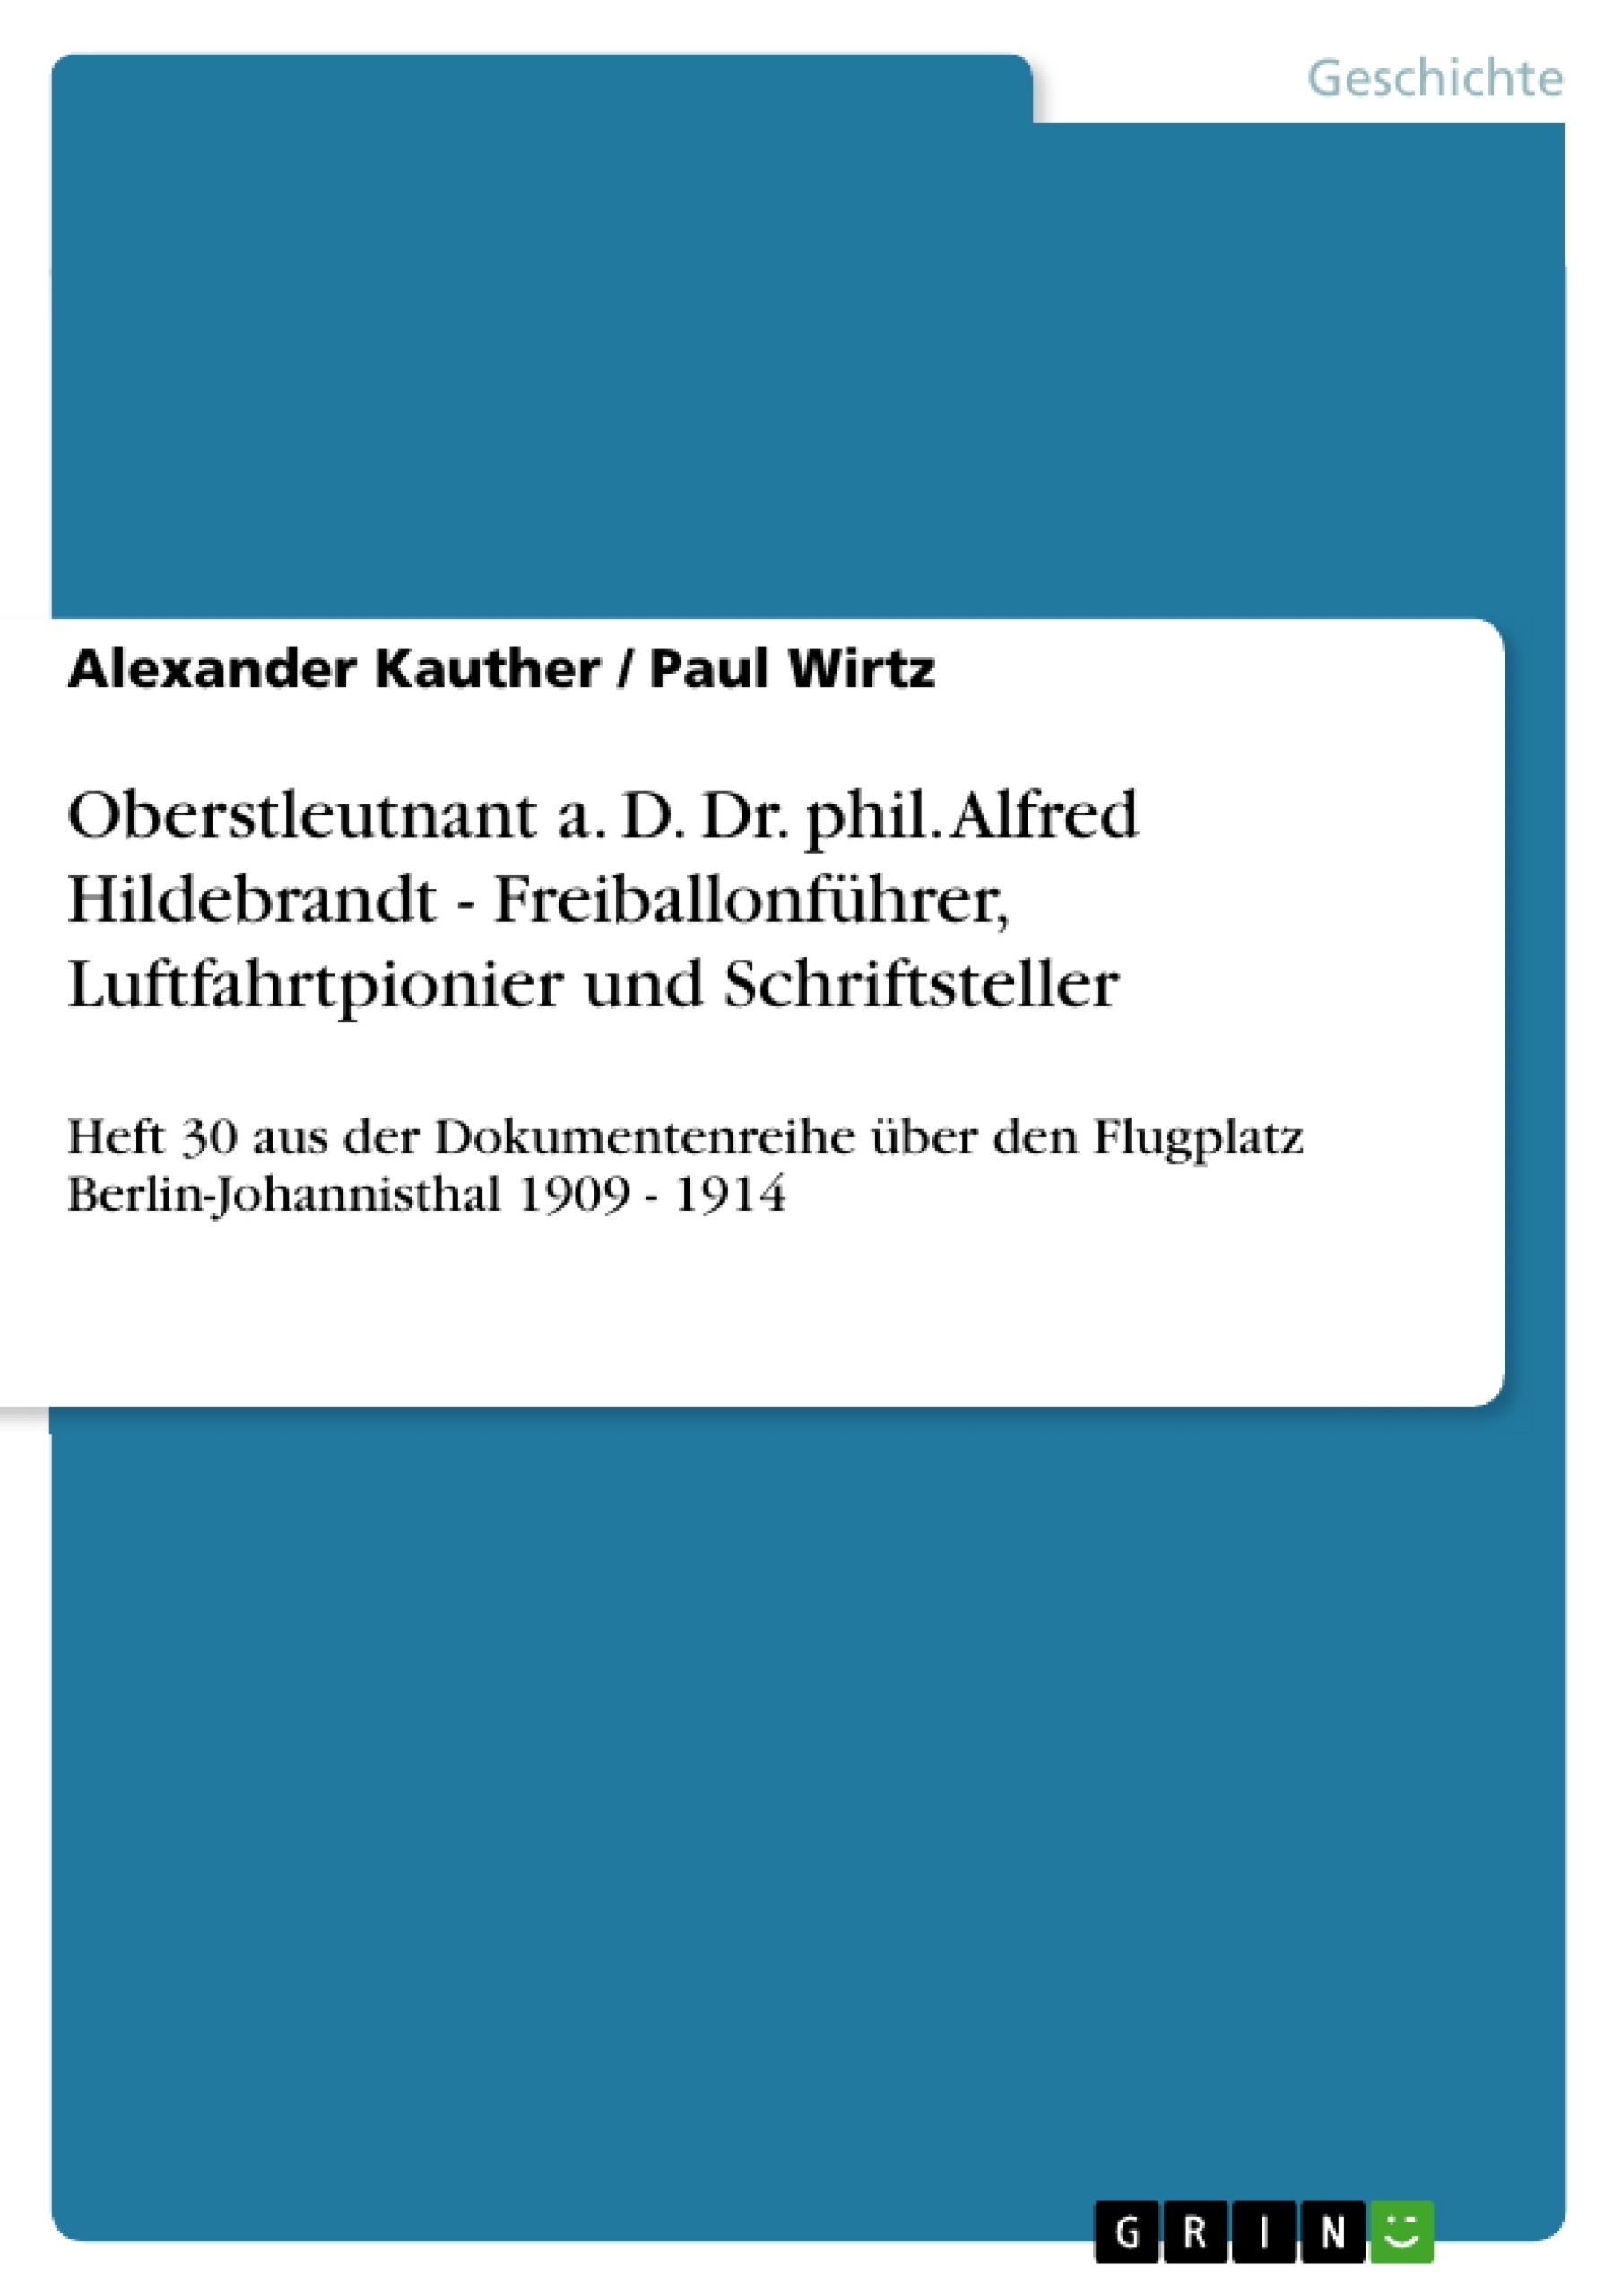 Título: Oberstleutnant a. D. Dr. phil. Alfred Hildebrandt - Freiballonführer, Luftfahrtpionier und Schriftsteller